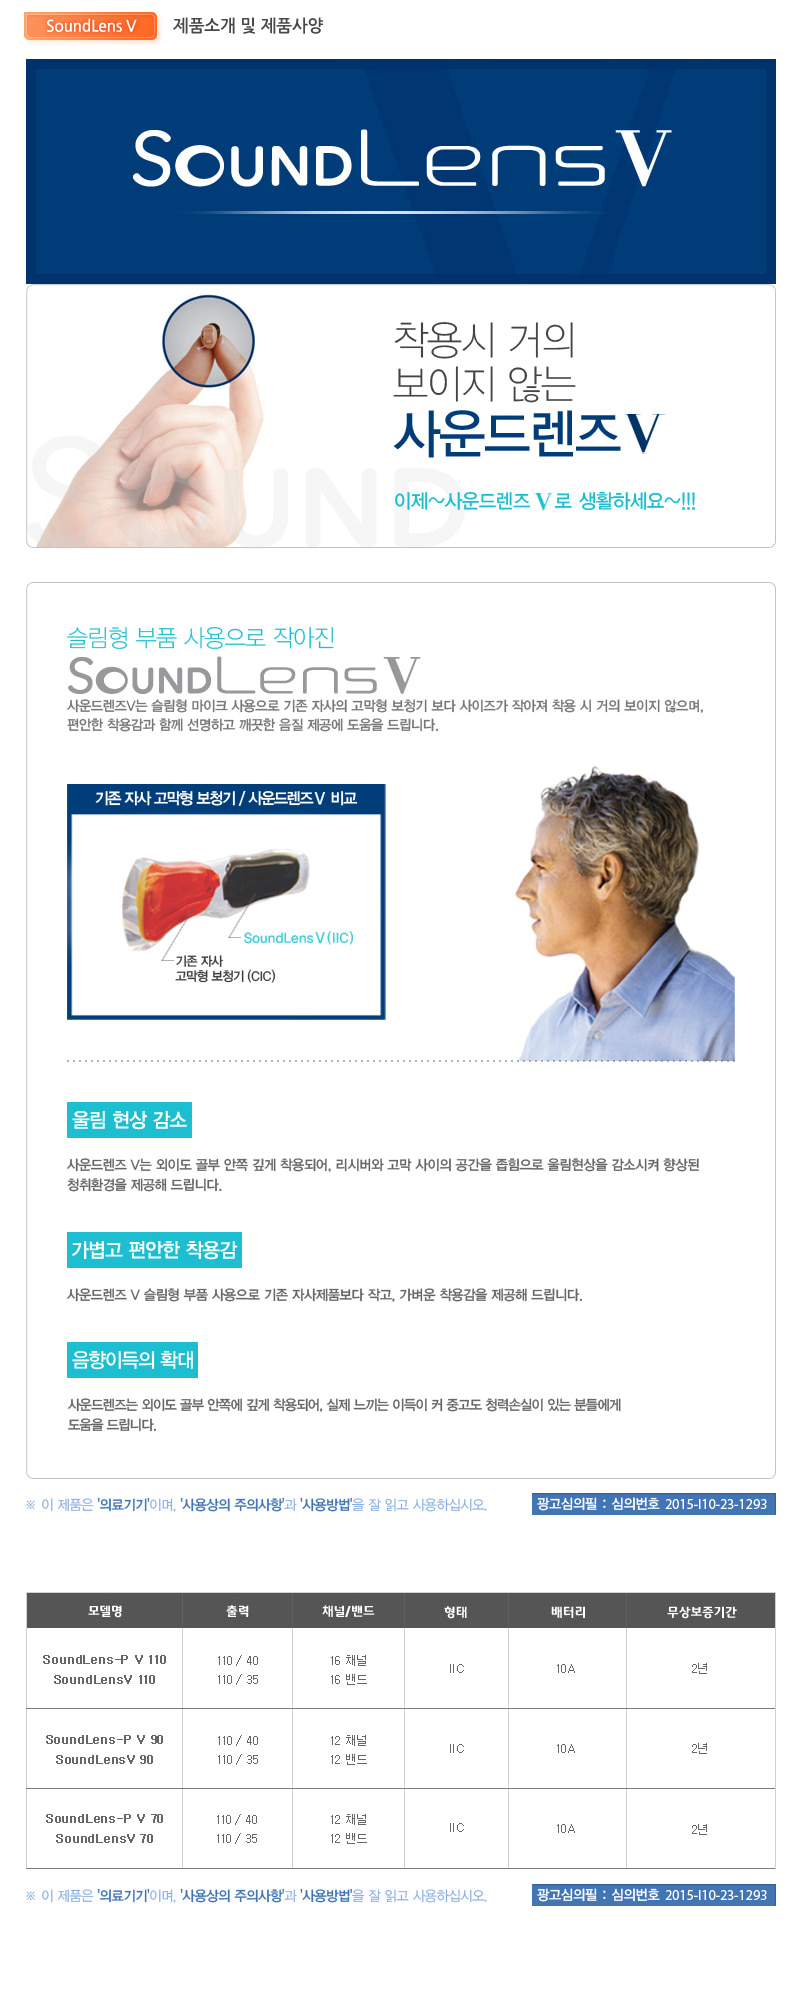 SoundLens V